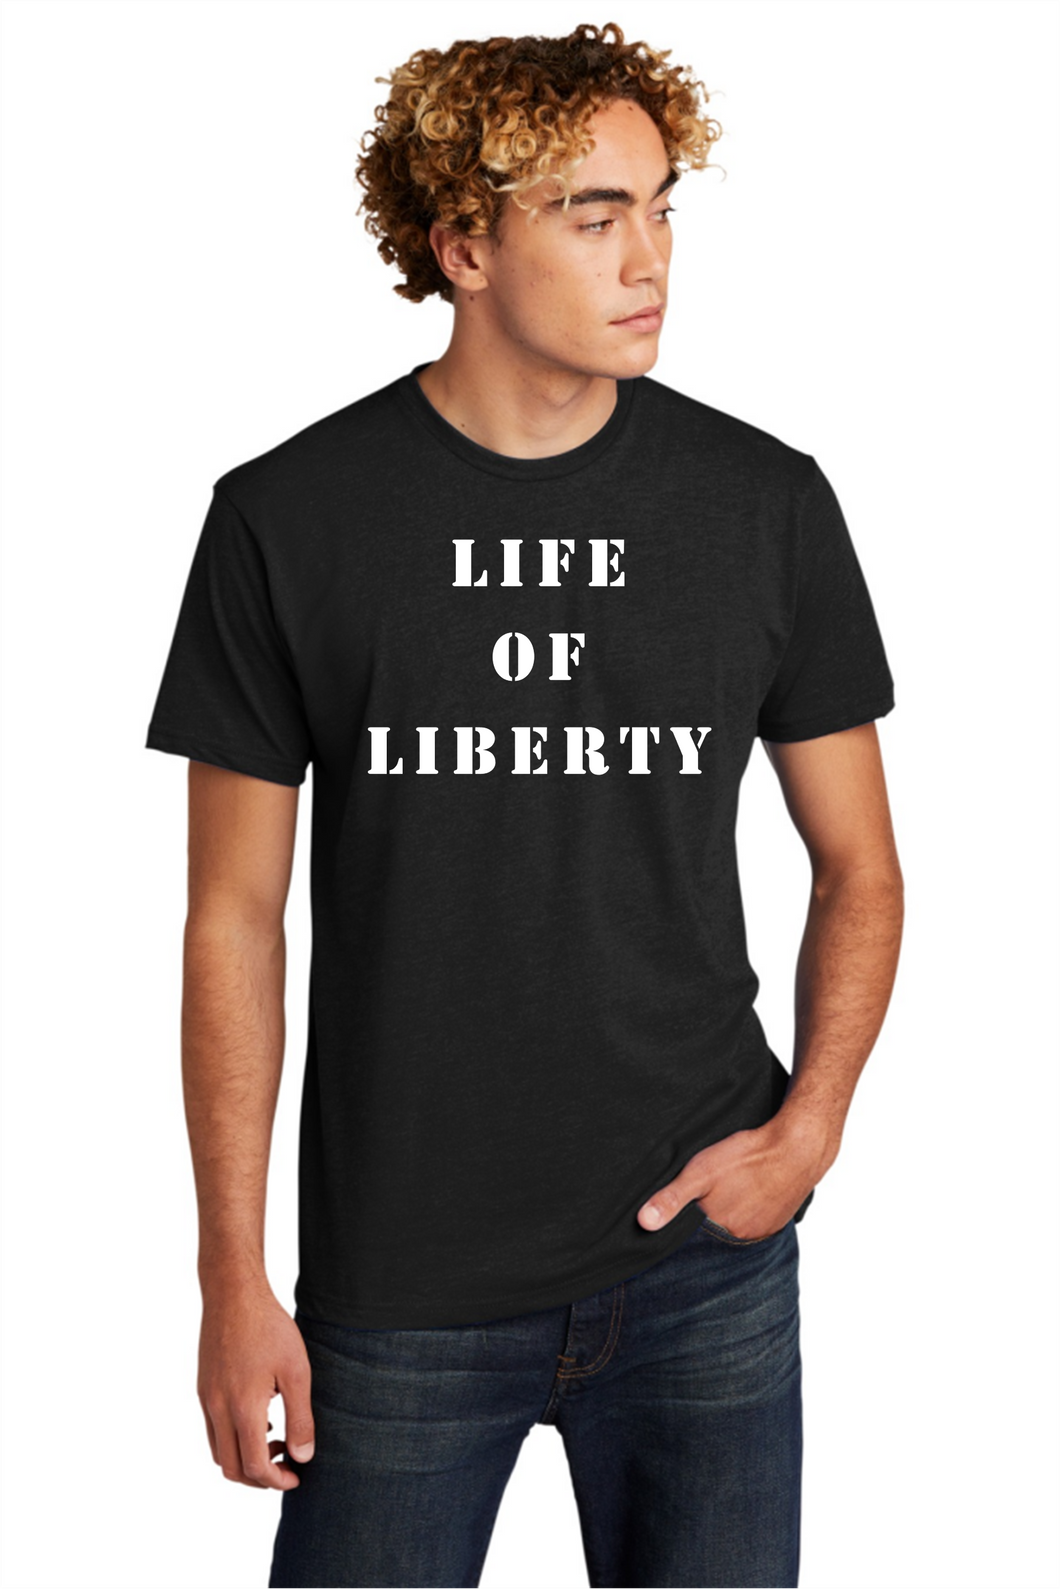 Life of Liberty Statement T-Shirt